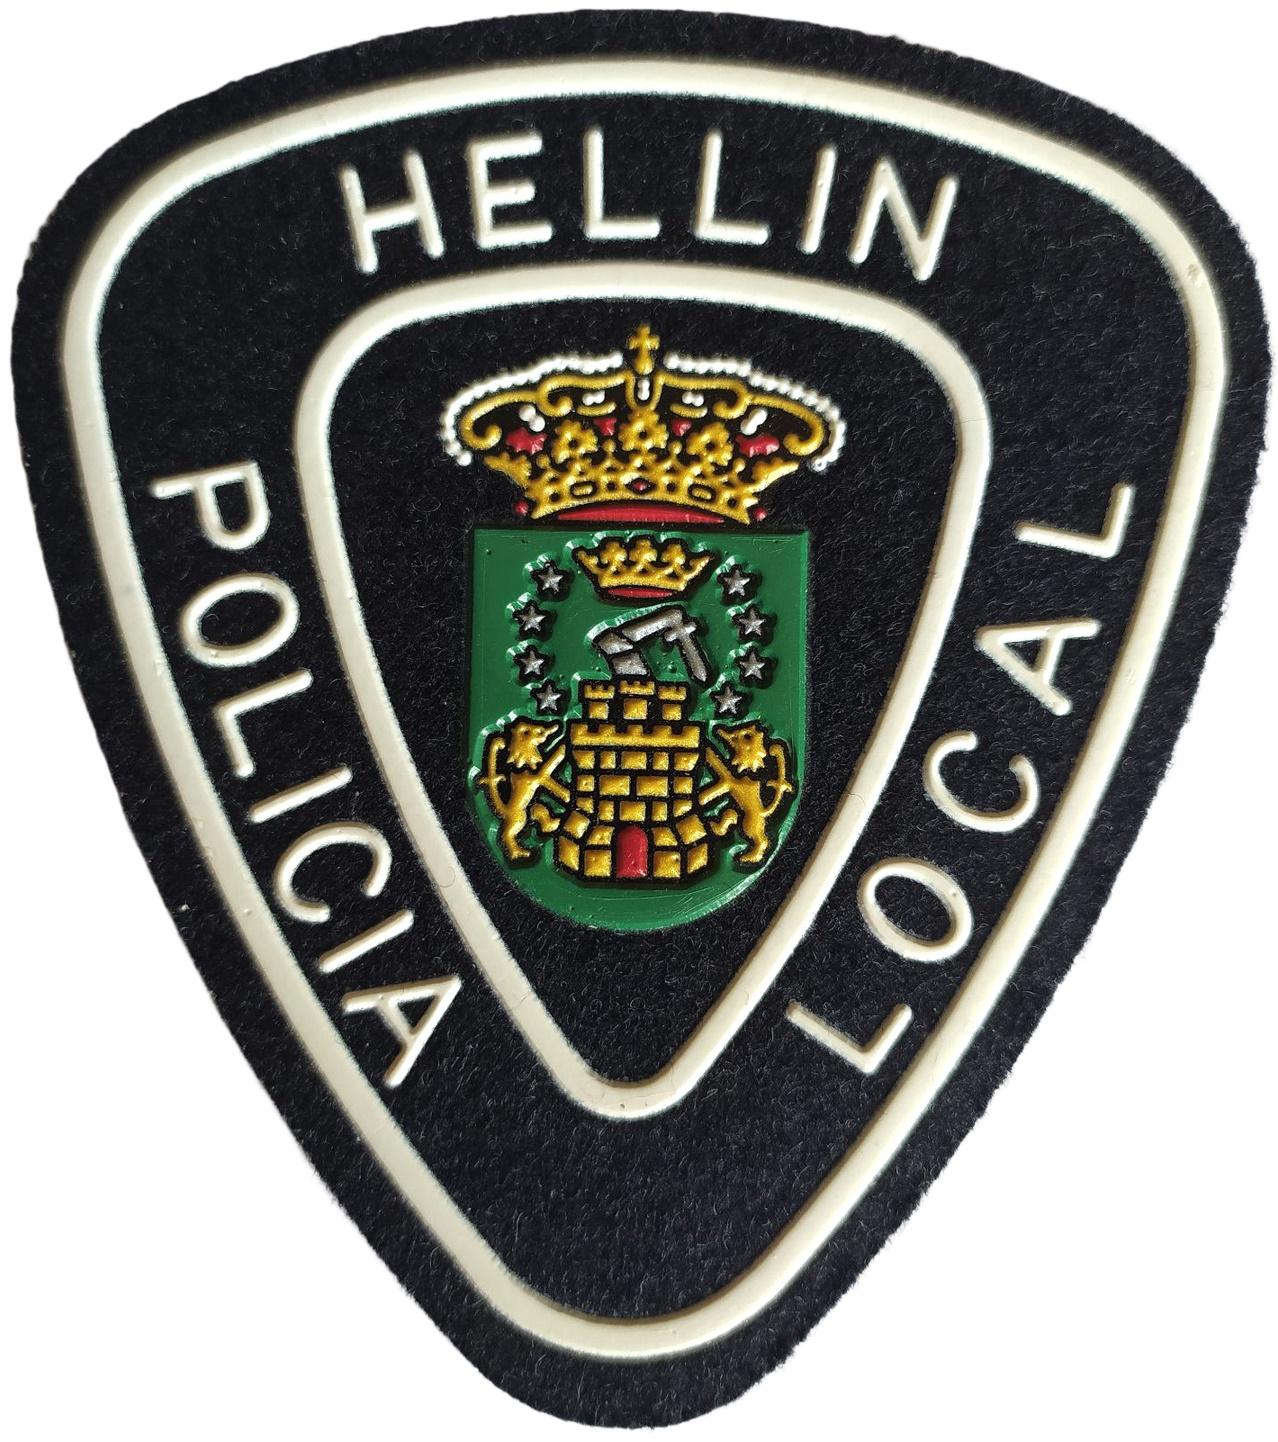 Policía Local Hellín Castilla la Mancha parche insignia emblema distintivo